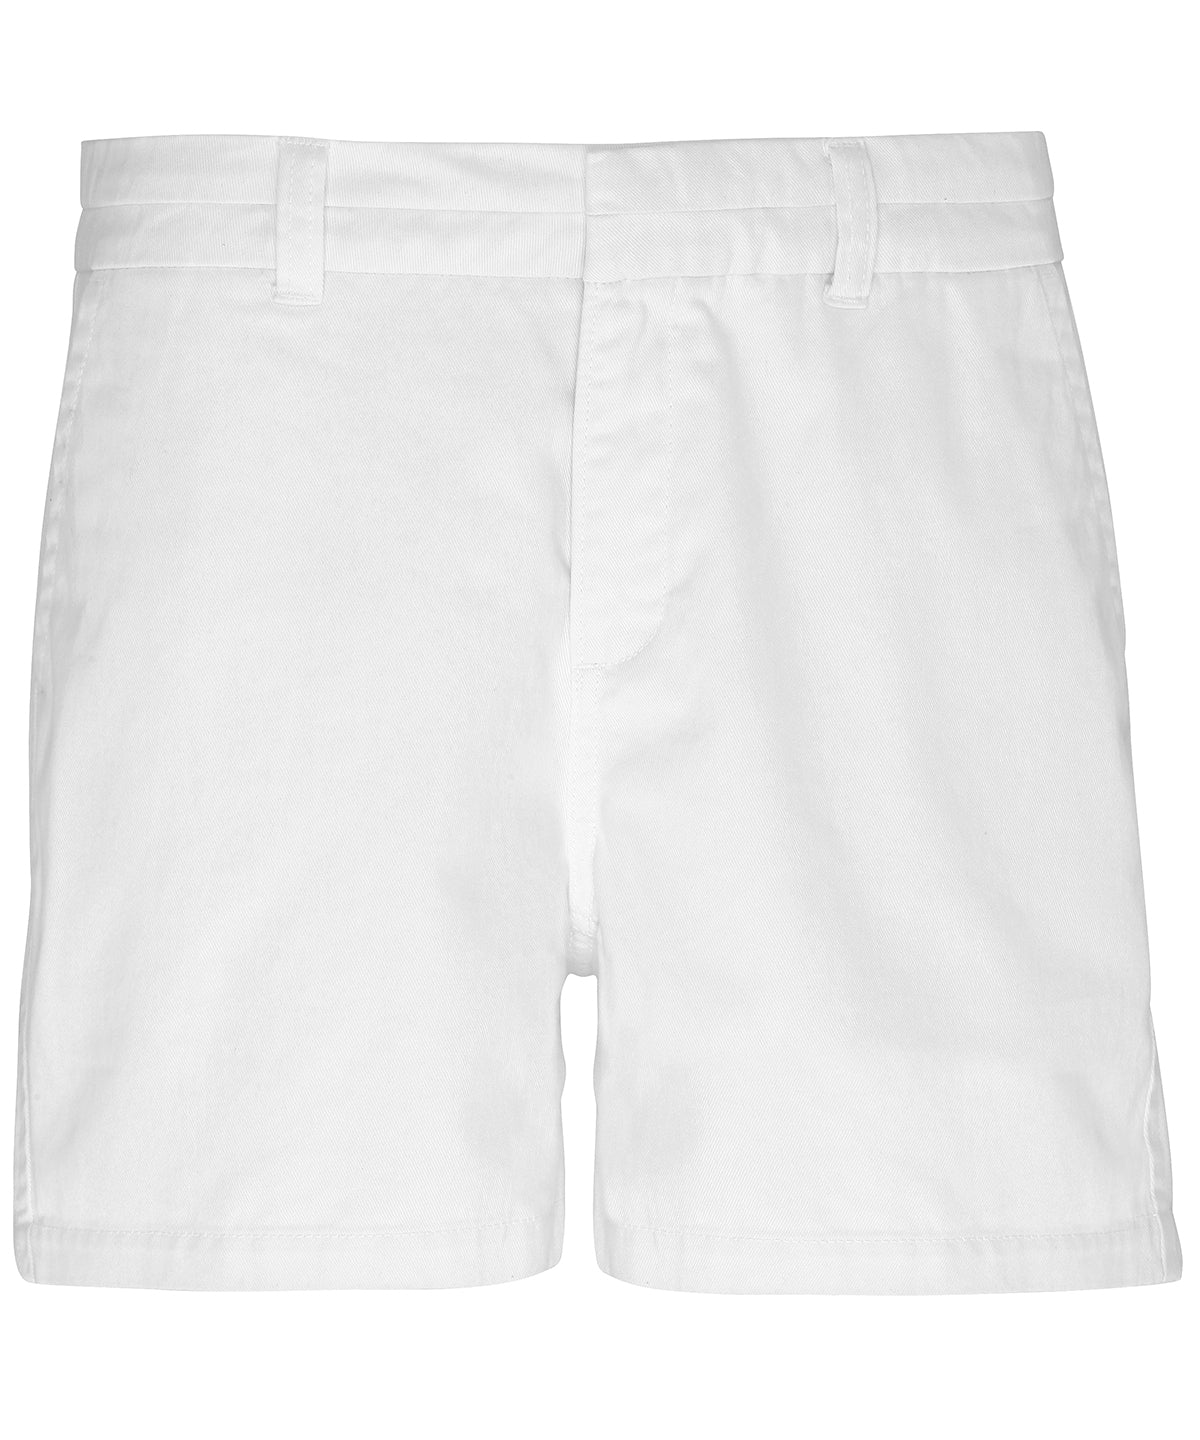 Stuttbuxur - Women's Chino Shorts